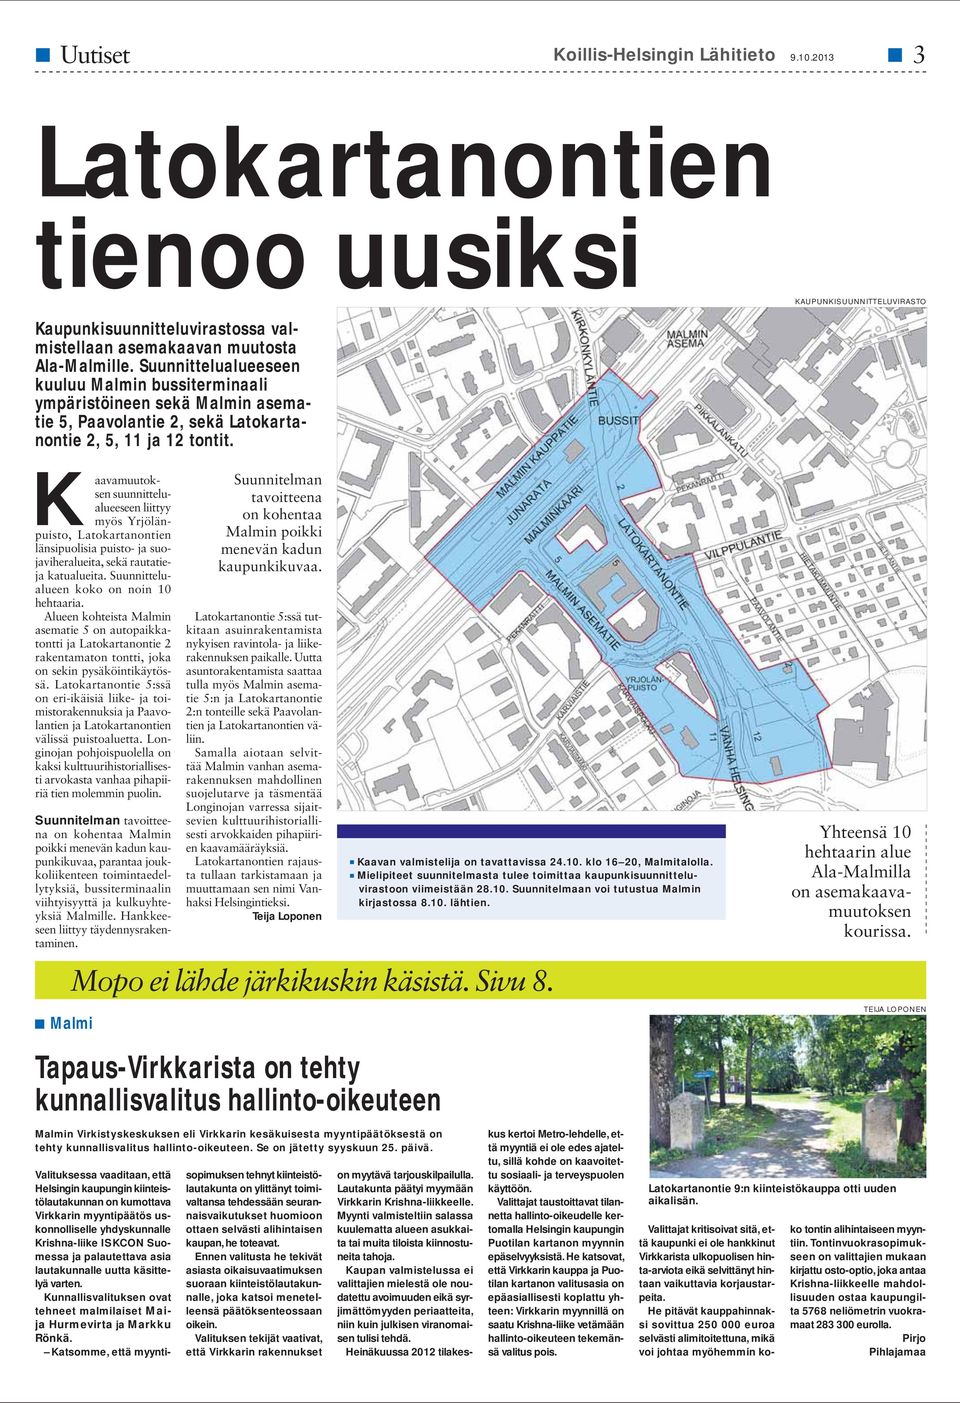 Kaavamuutoksen suunnittelualueeseen liittyy myös Yrjölänpuisto, Latokartanontien länsipuolisia puisto- ja suojaviheralueita, sekä rautatieja katualueita. Suunnittelualueen koko on noin 10 hehtaaria.